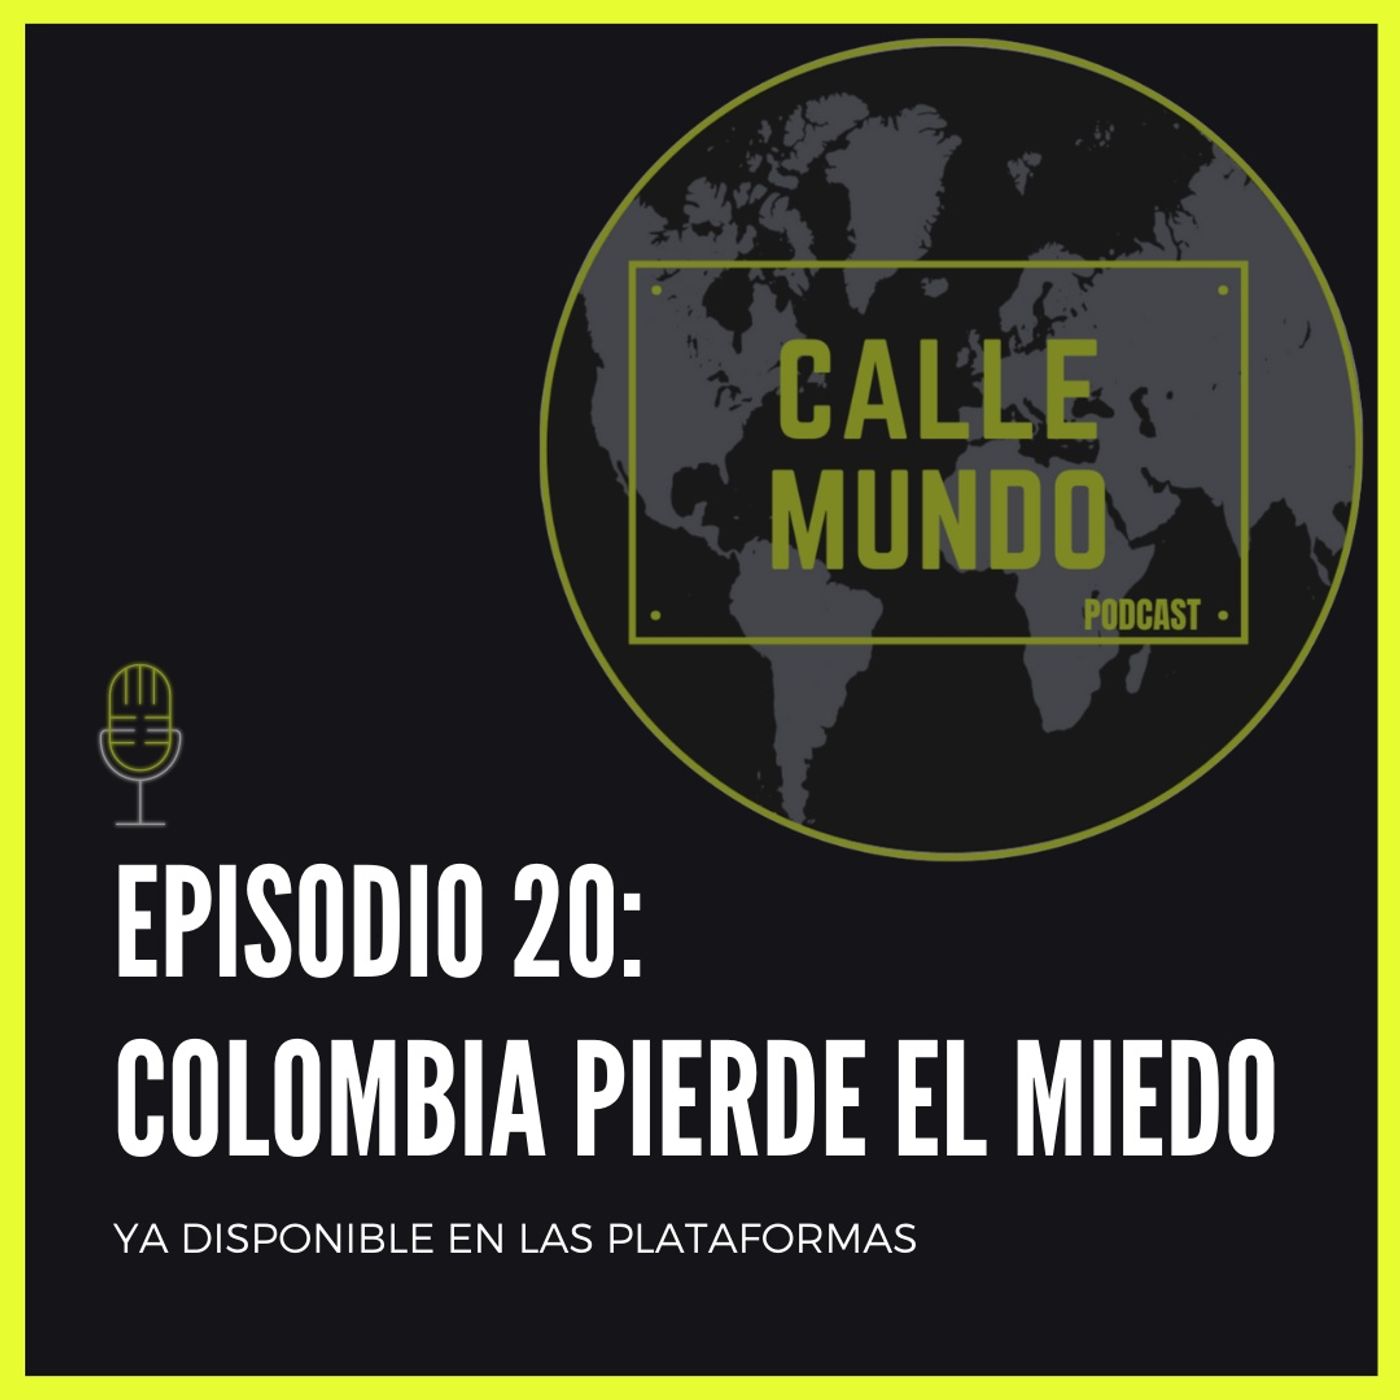 Episodio 20: Colombia pierde el miedo